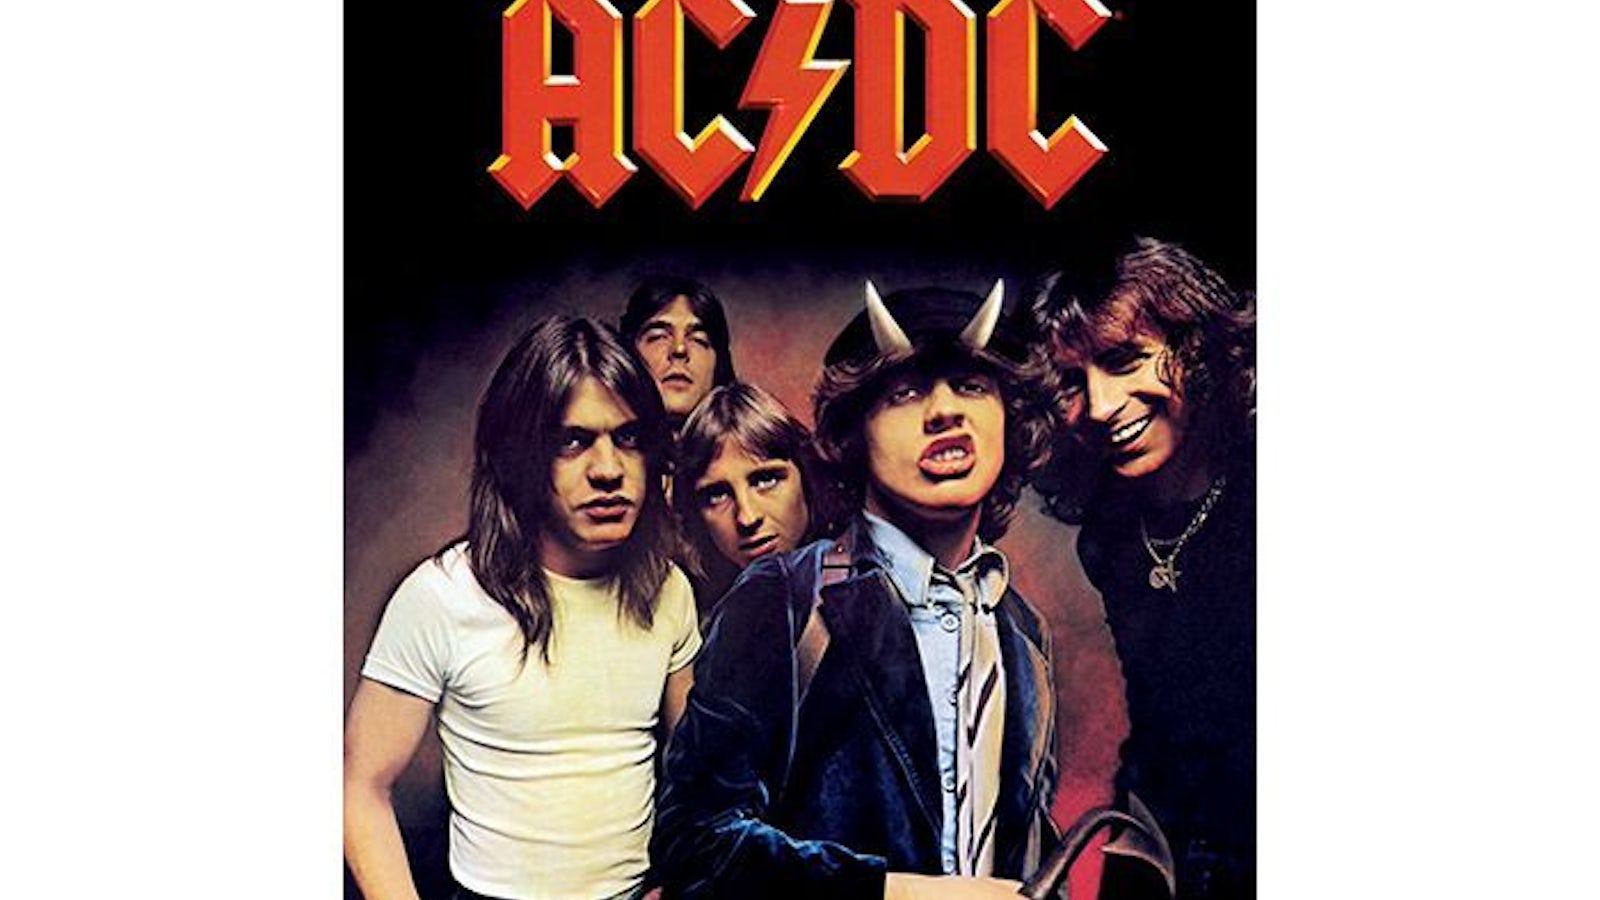 Acdc highway to hell. AC DC Highway to Hell 1979. AC DC Постер. AC DC Highway to Hell обложка. Плакат AC DC Highway to Hell.